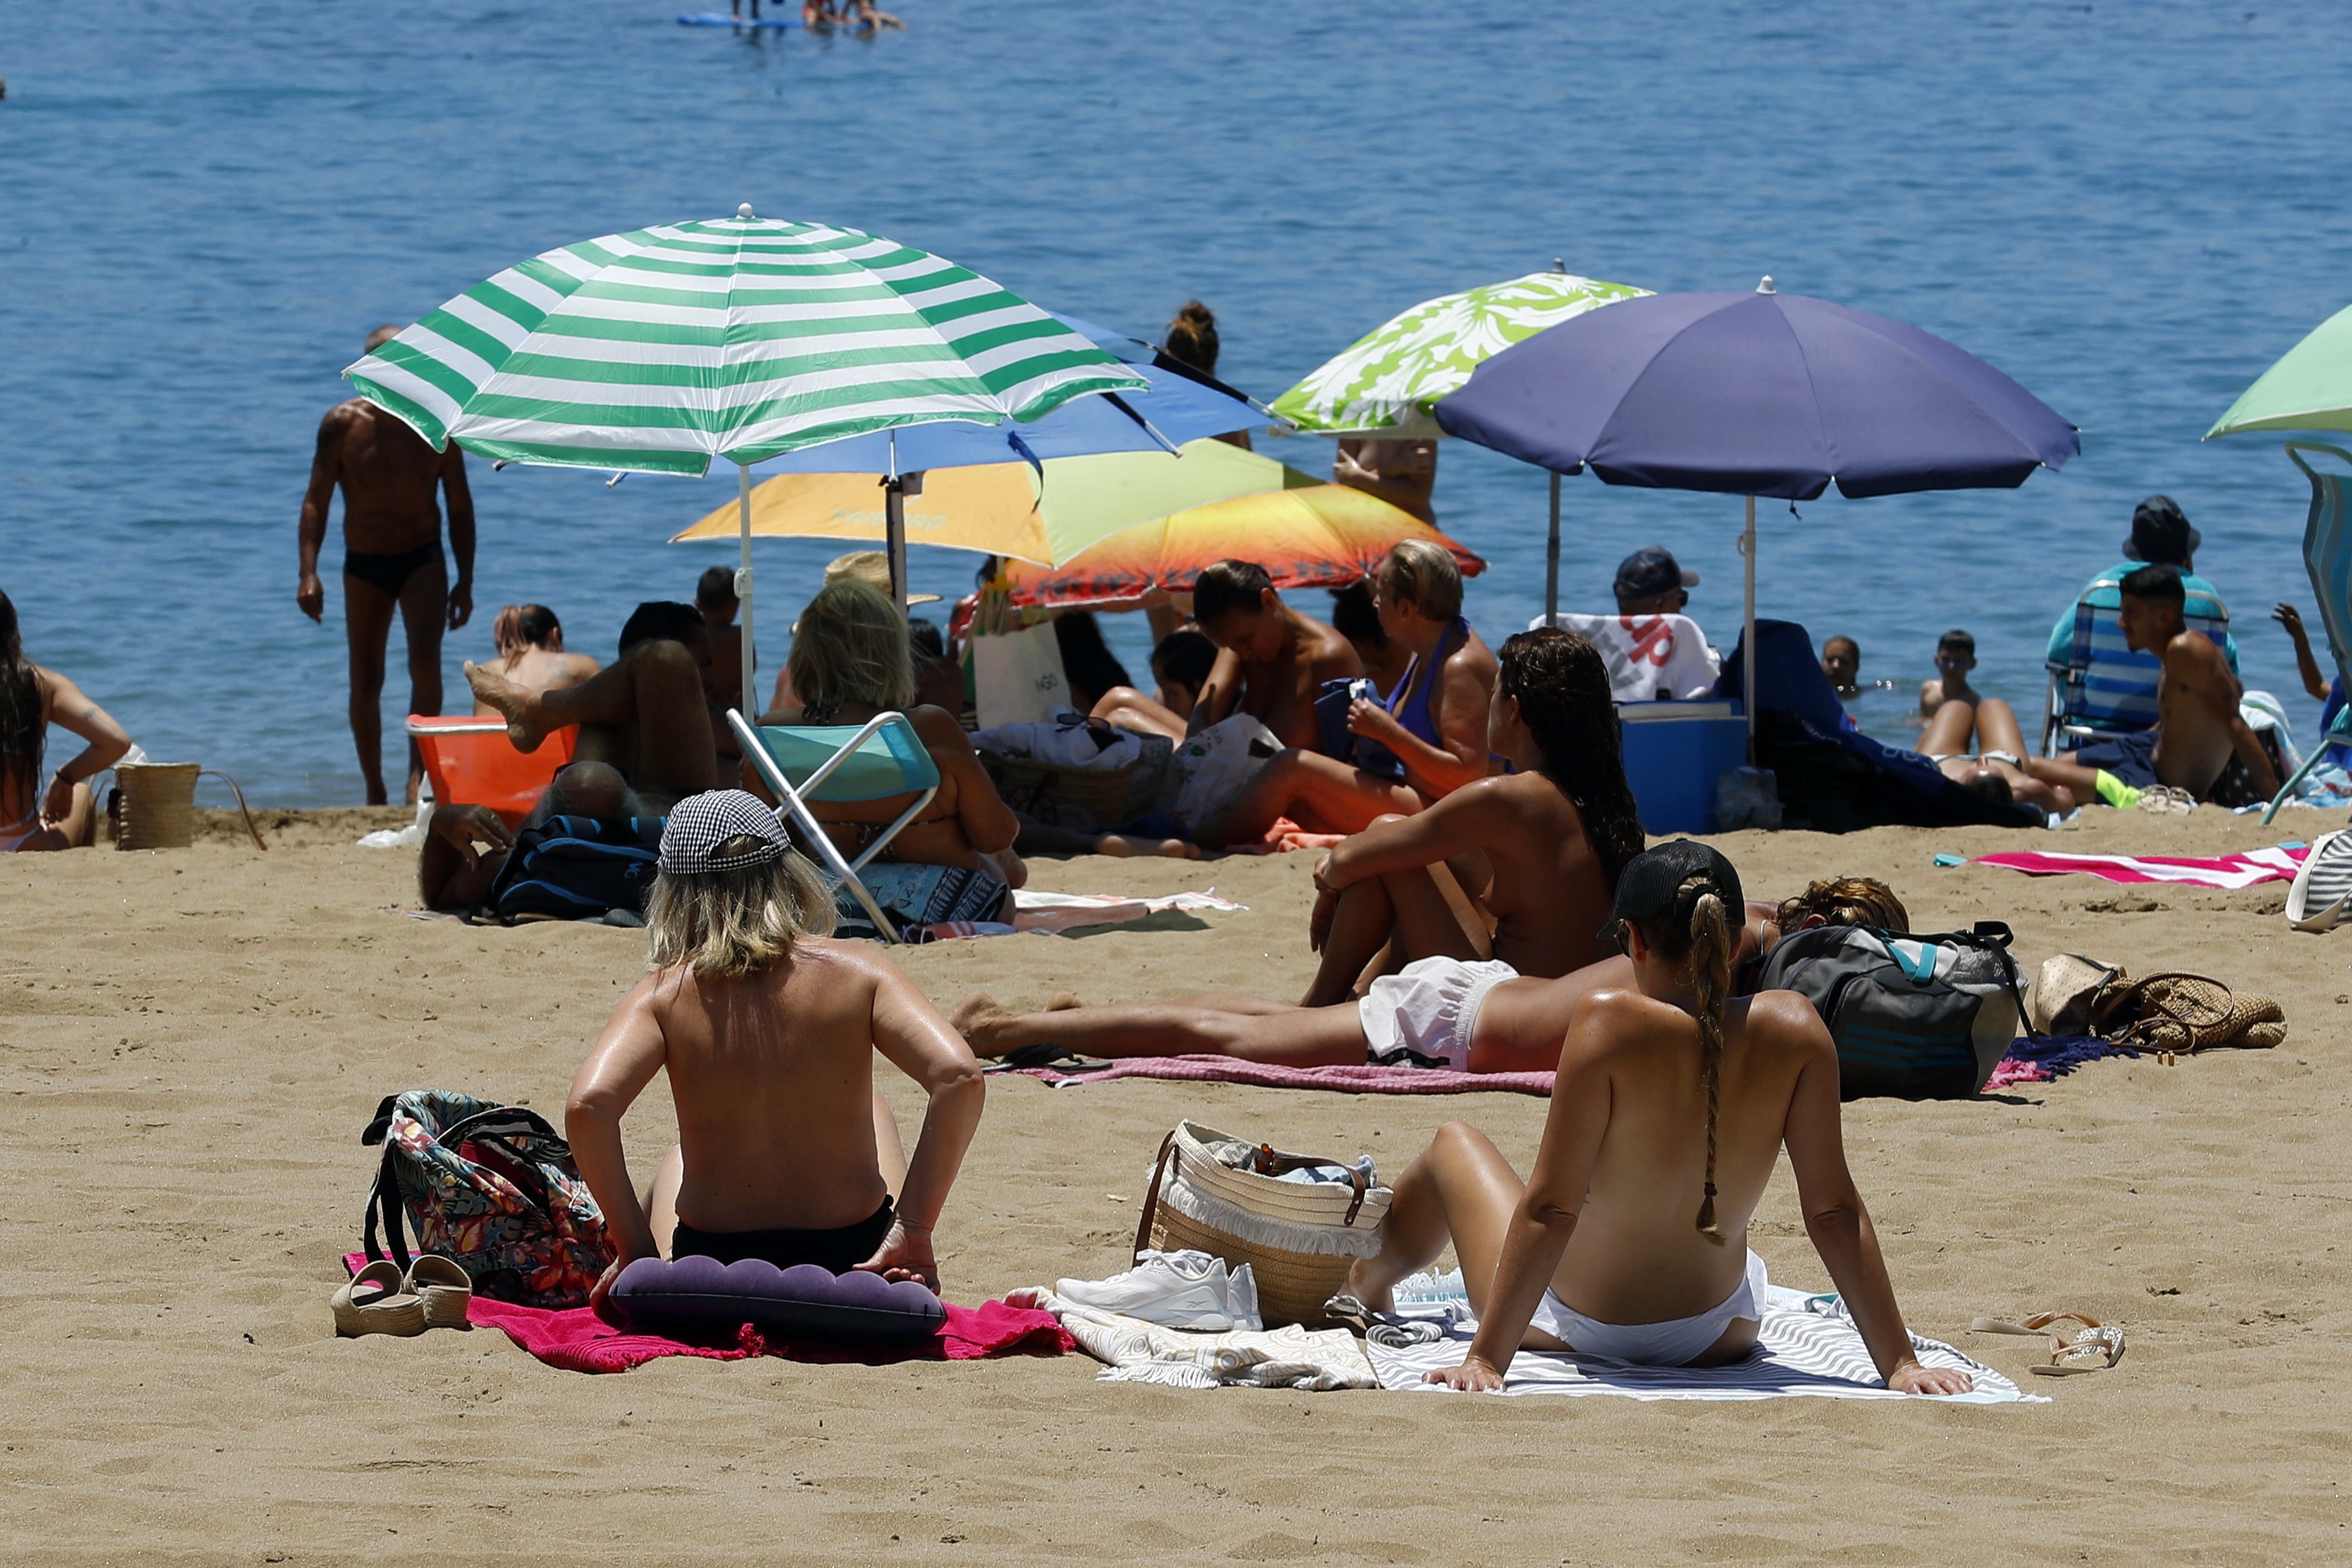 Miles de personas han disfruta este sábado de un día de playa en Las Canteras, en Las Palmas de Gran Canaria, donde se han registrado cielos despejados y temperaturas sobre los 30 grados centígrados.